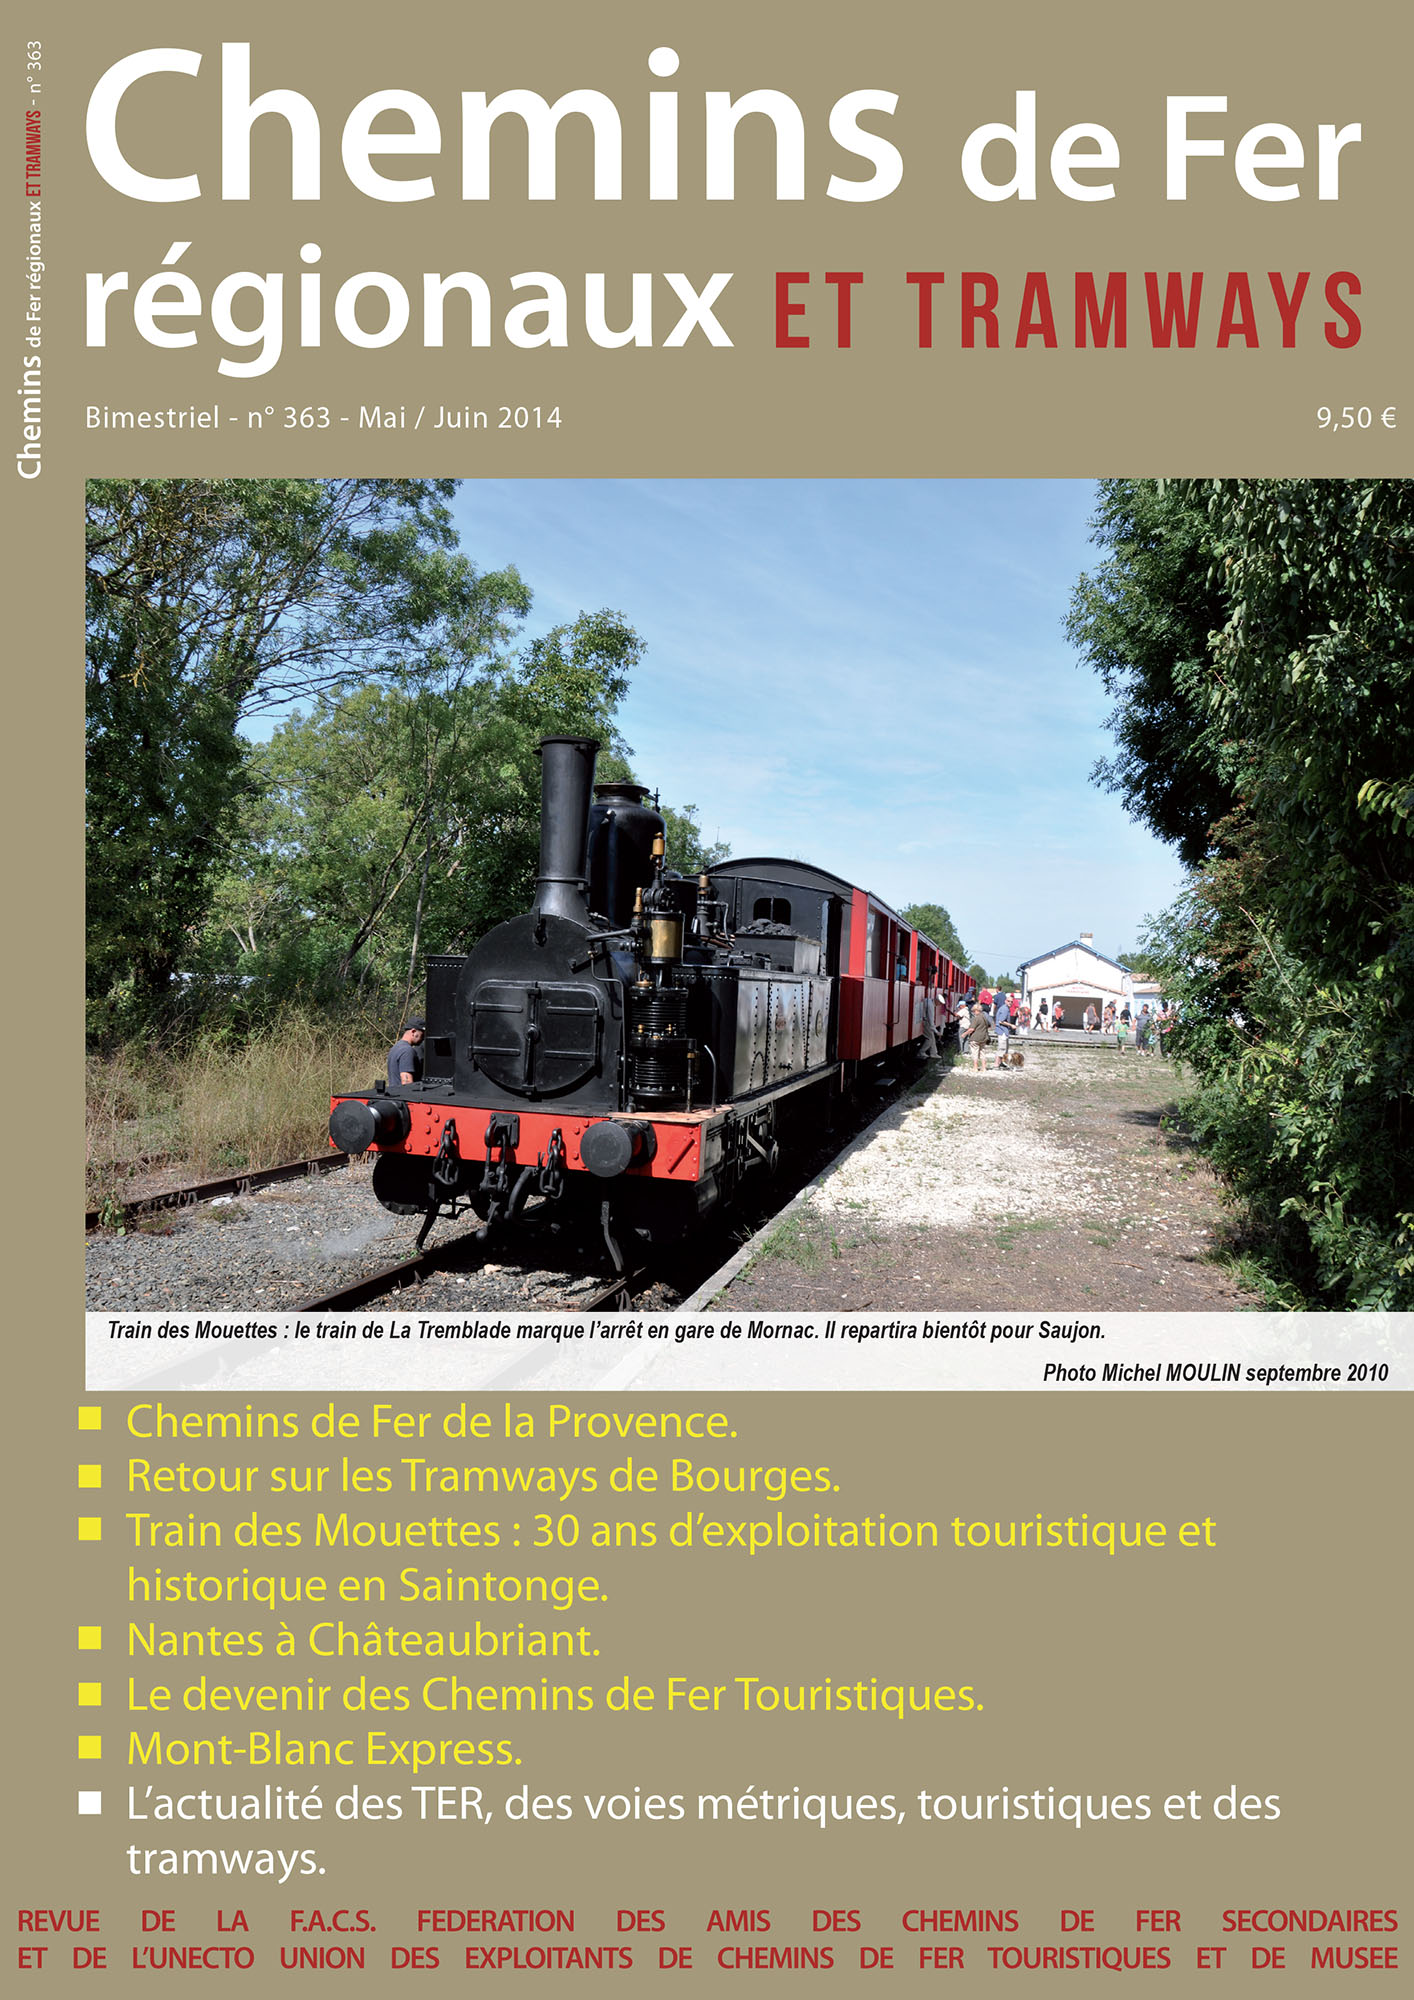 CFRT N°363 : Tramways de Bourges, Train des Mouettes